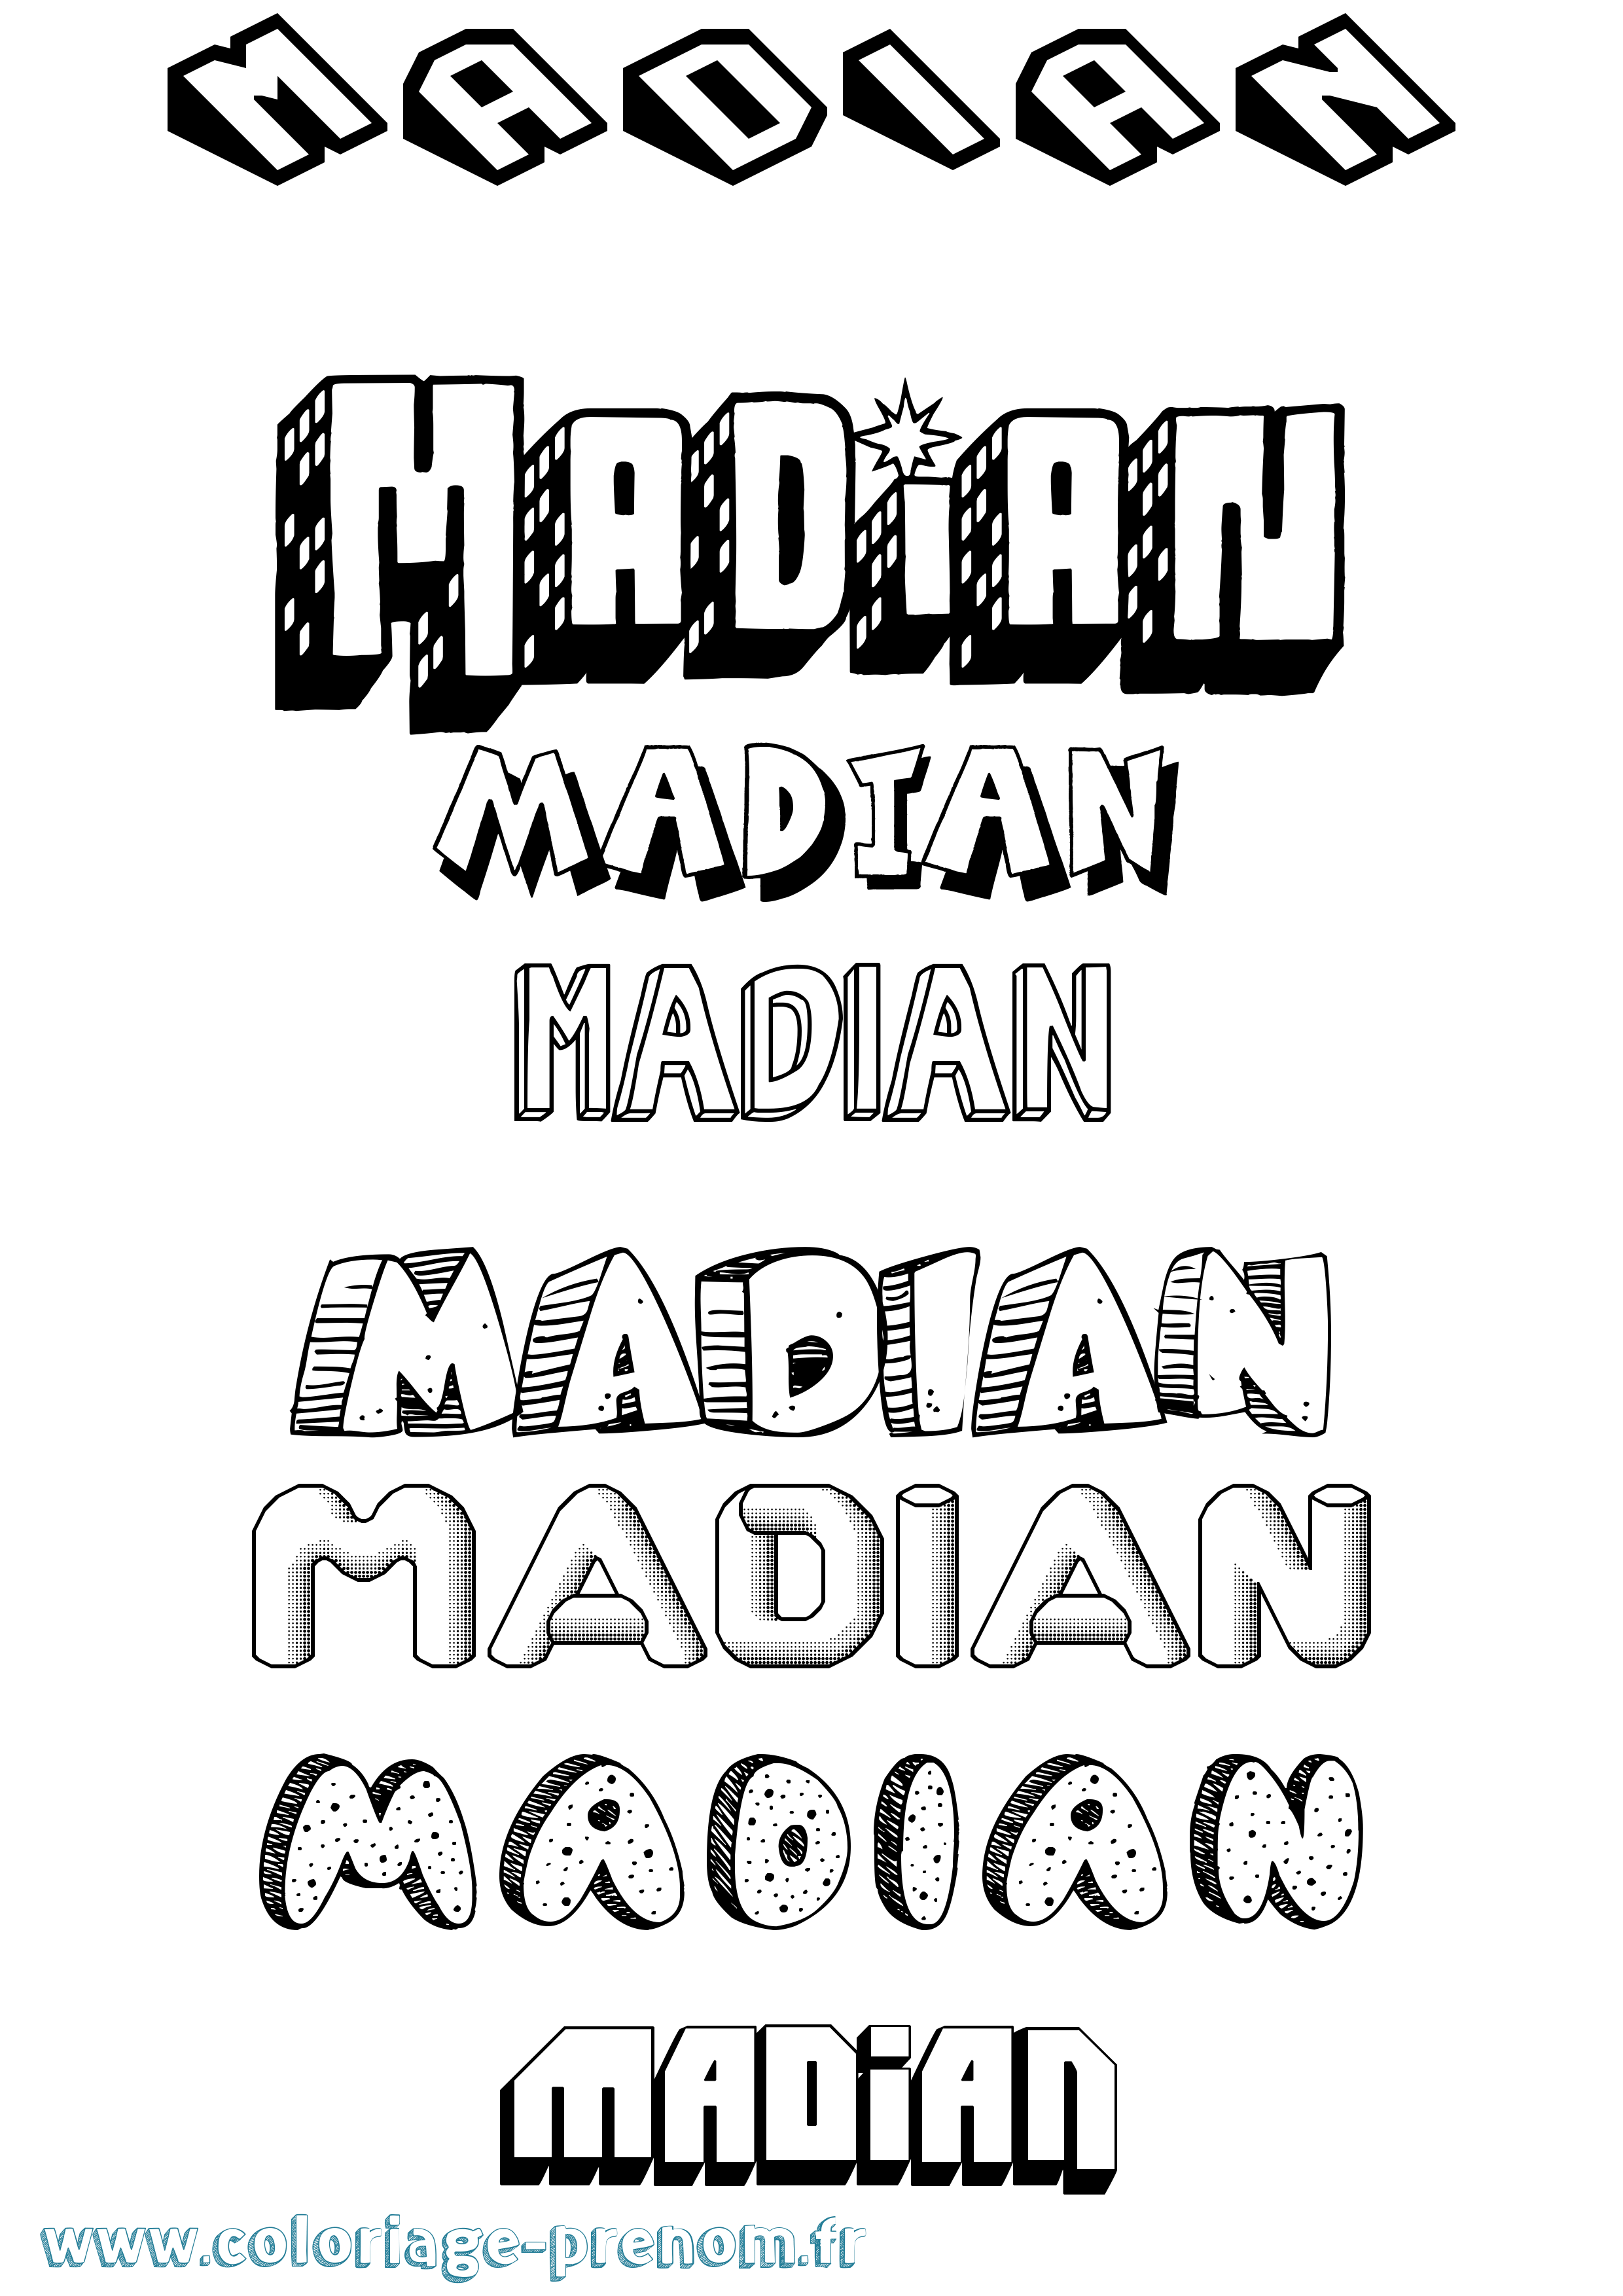 Coloriage prénom Madian Effet 3D